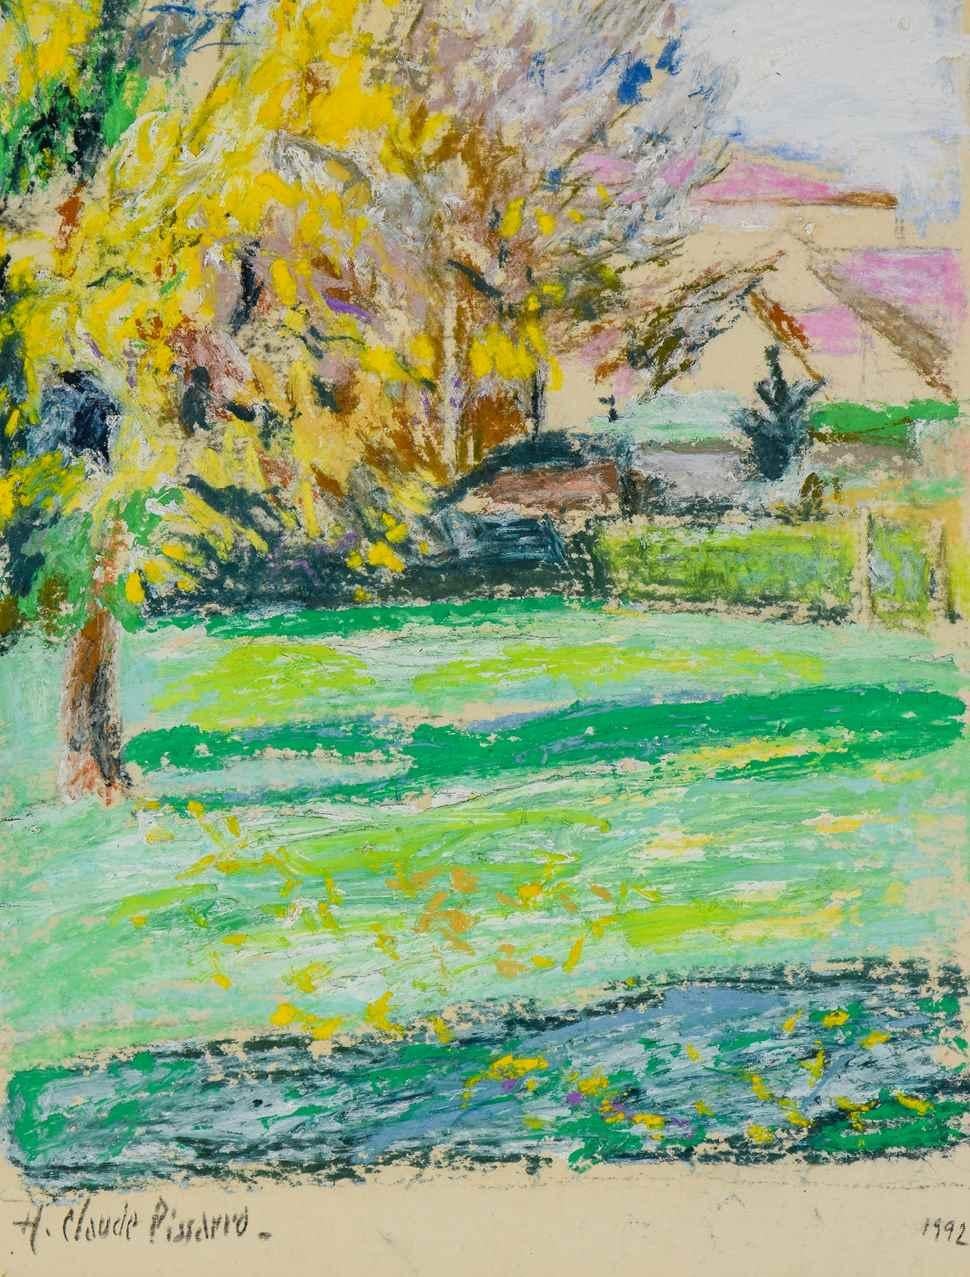 Hugues Claude Pissarro Landscape Painting - Paysage by Hugues Pissarro dit Pomié, 1992 - Oil on Canvas Painting